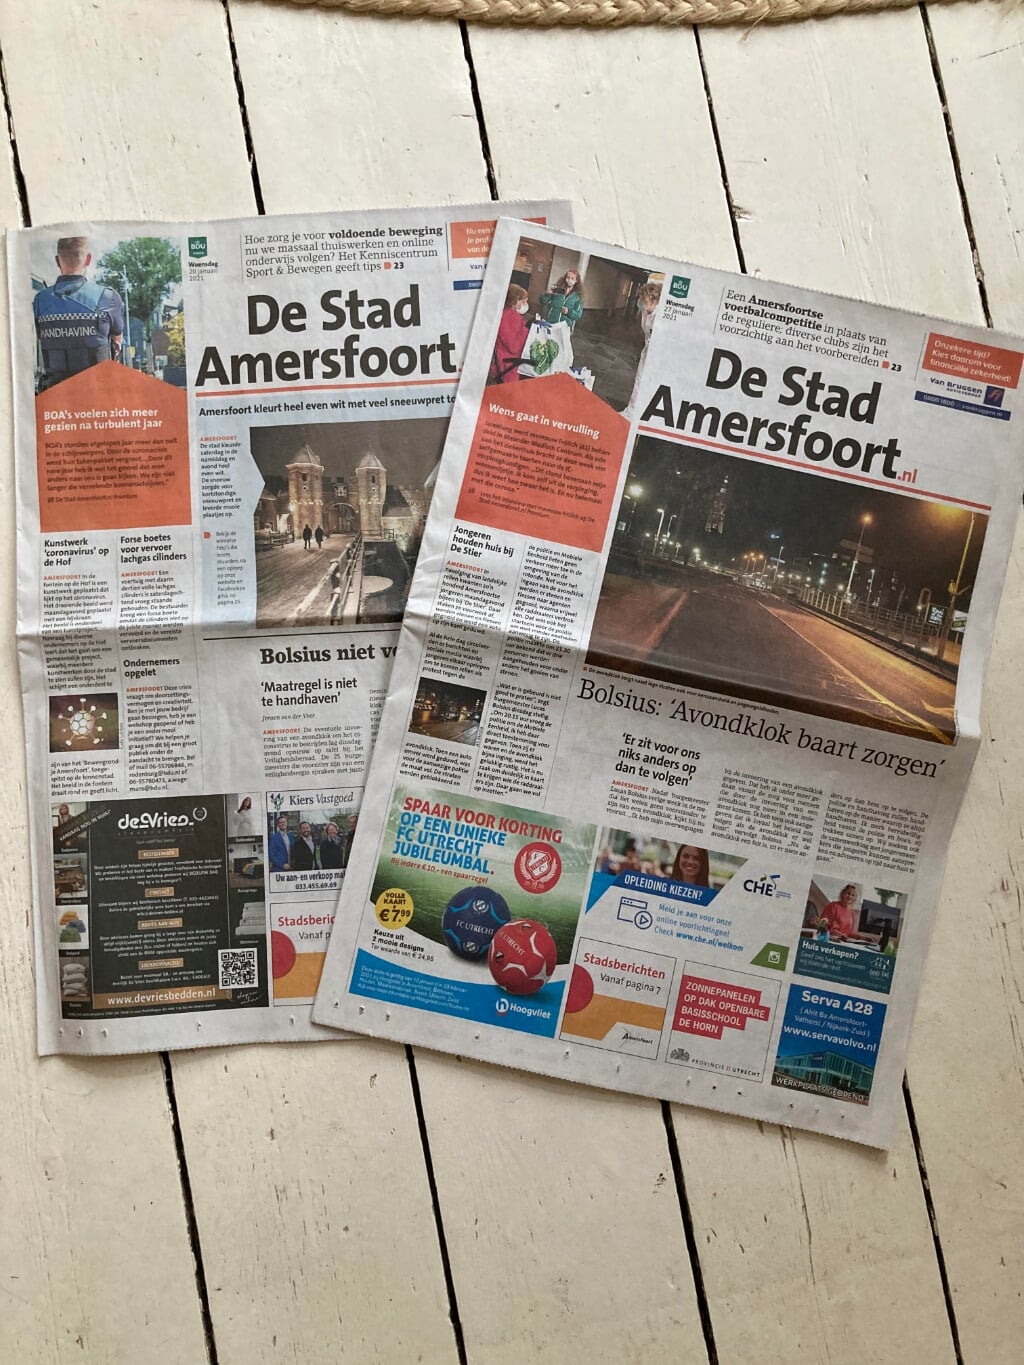 De Stad Amersfoort.nl verschijnt allang niet meer alleen op papier.